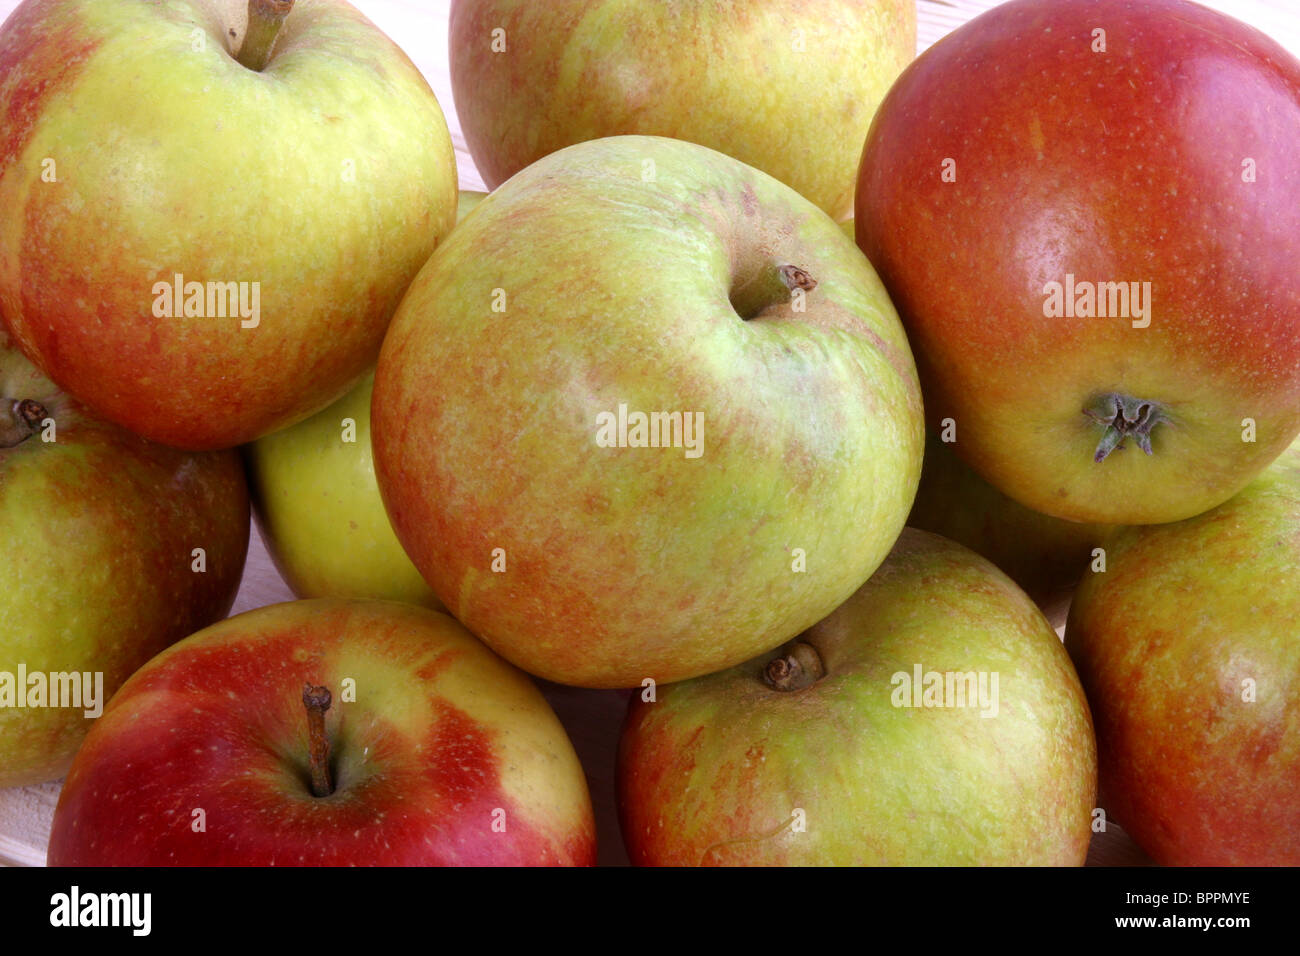 Coxs apples Stock Photo